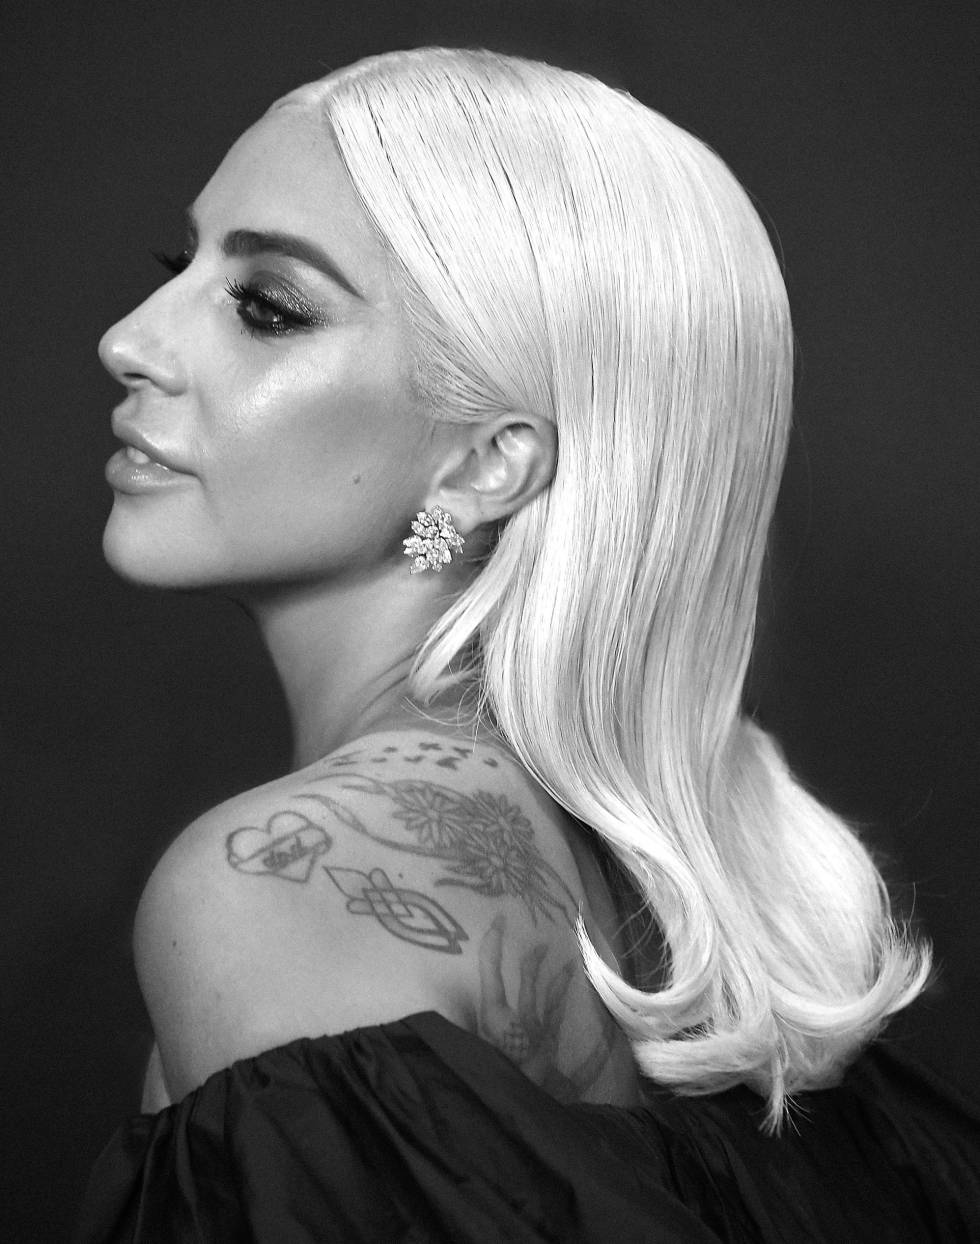 Lady Gaga: La ambición rubia
asalta Hollywood